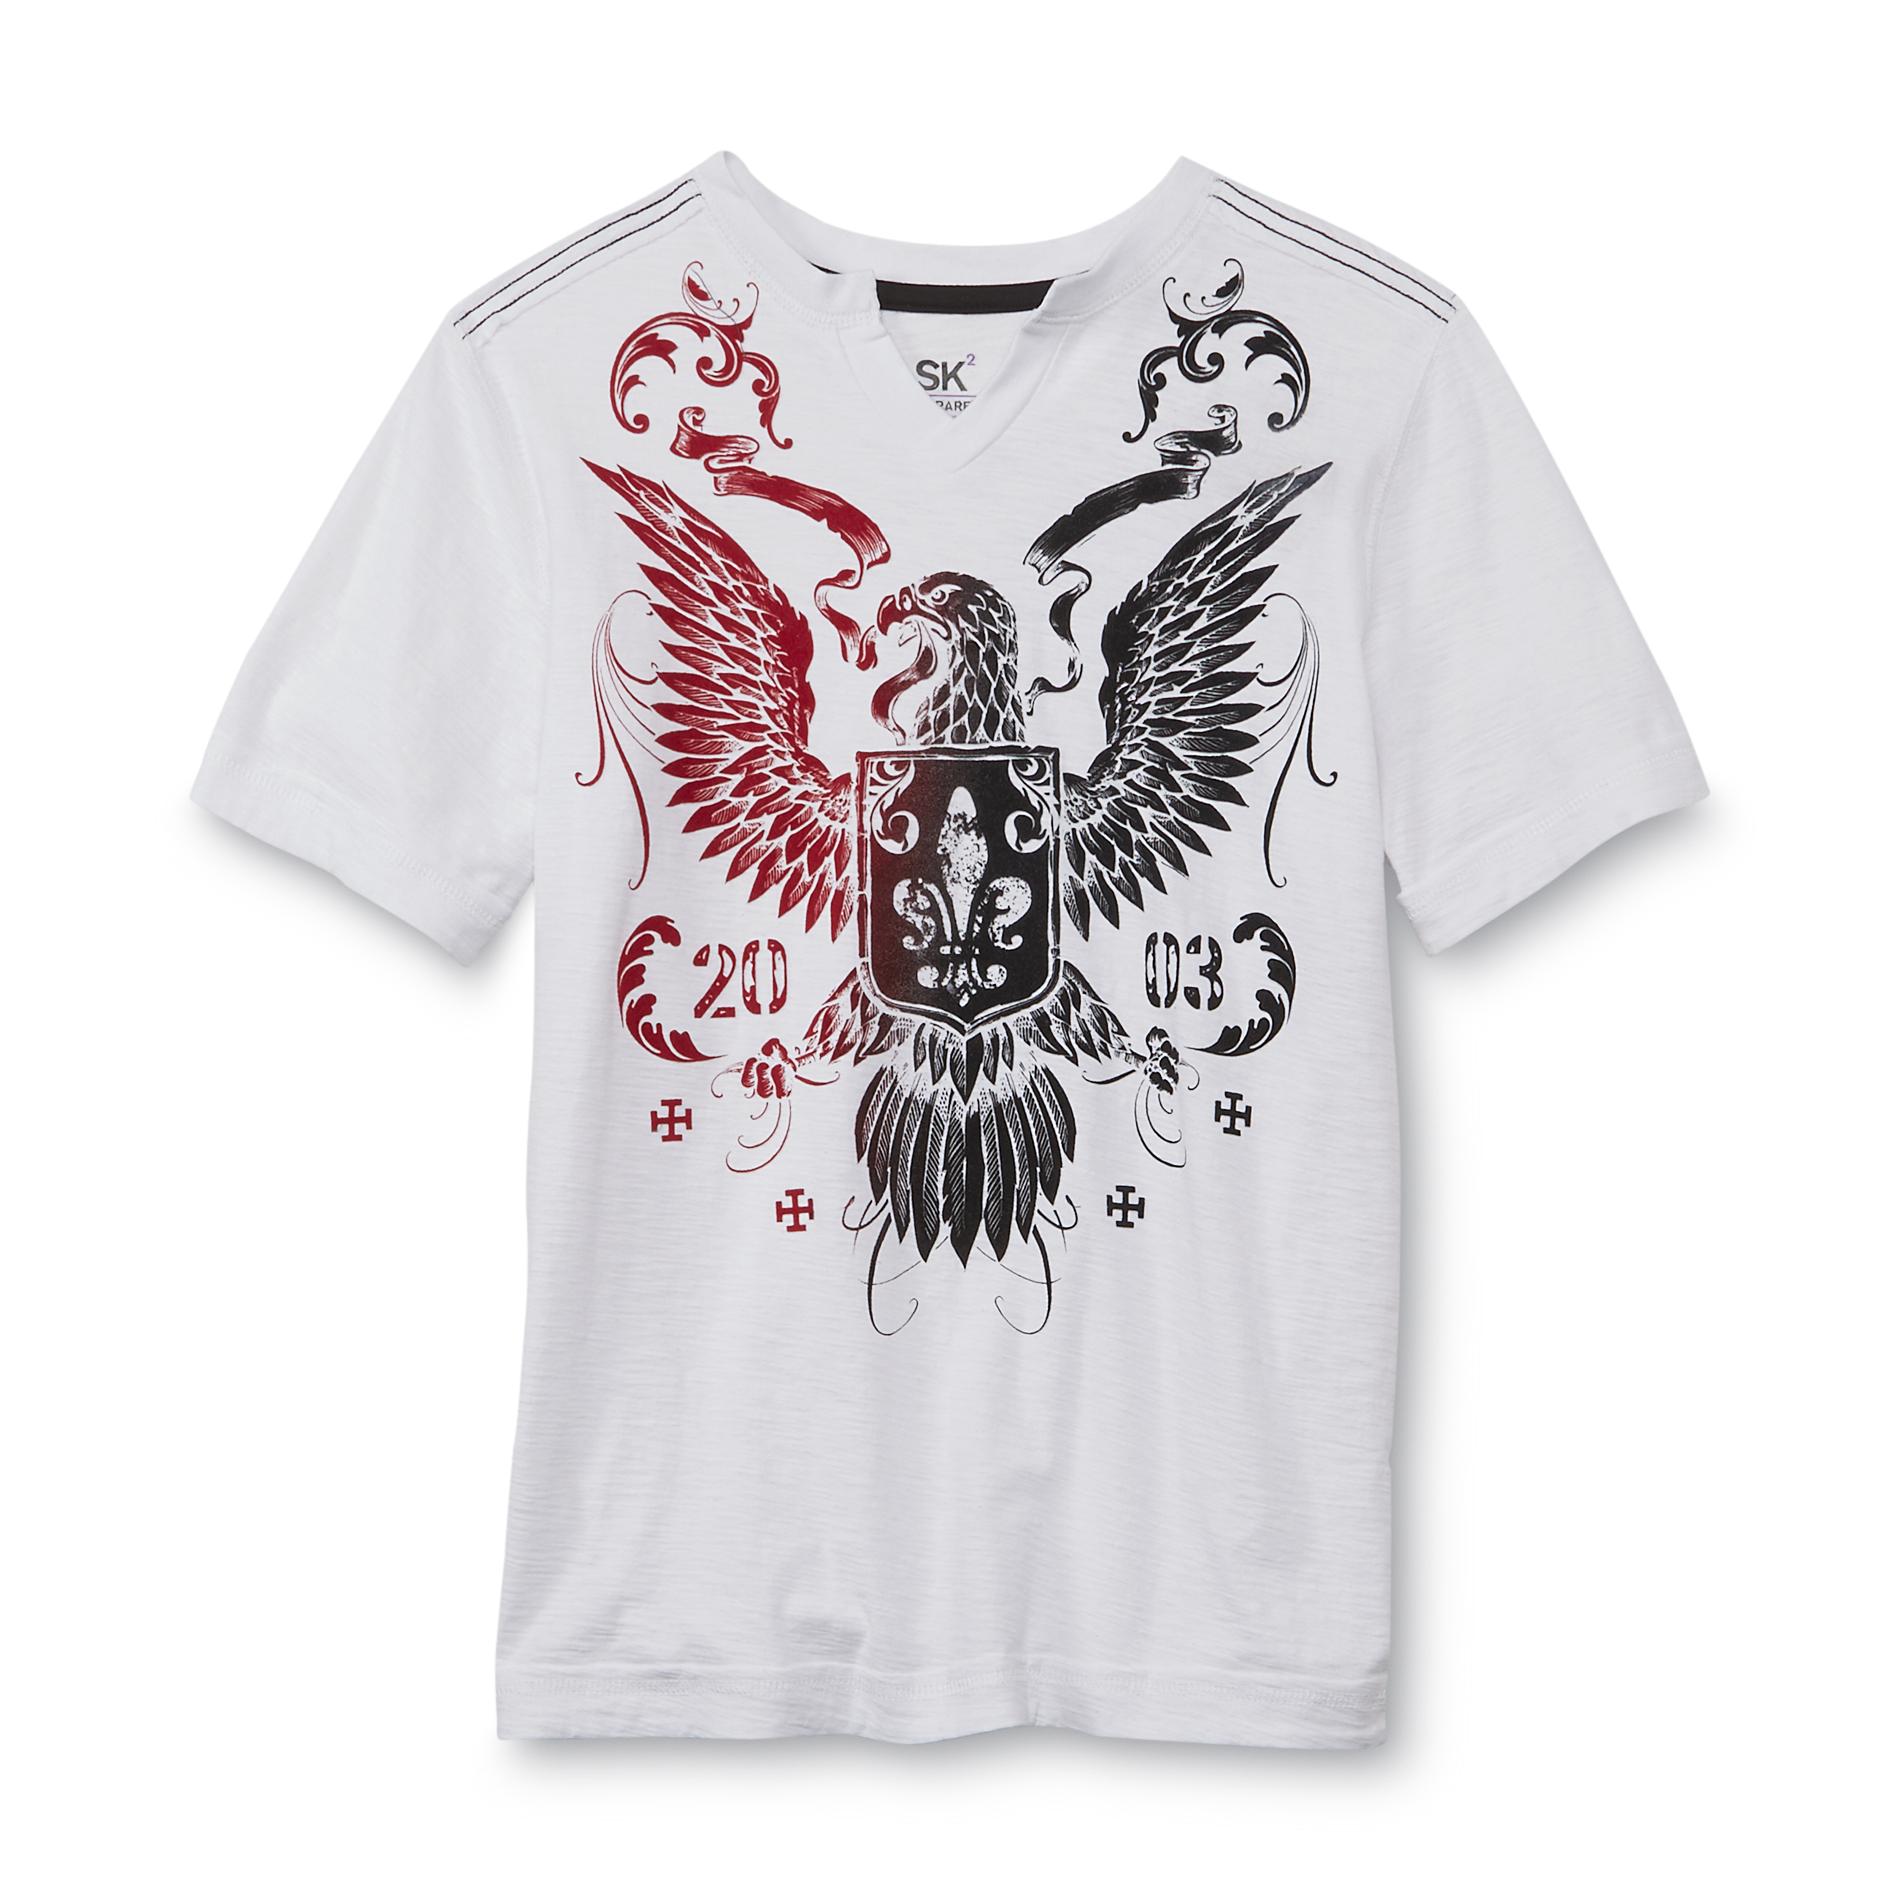 SK2 Boys V-Neck Graphic T-Shirt -Eagle Crest